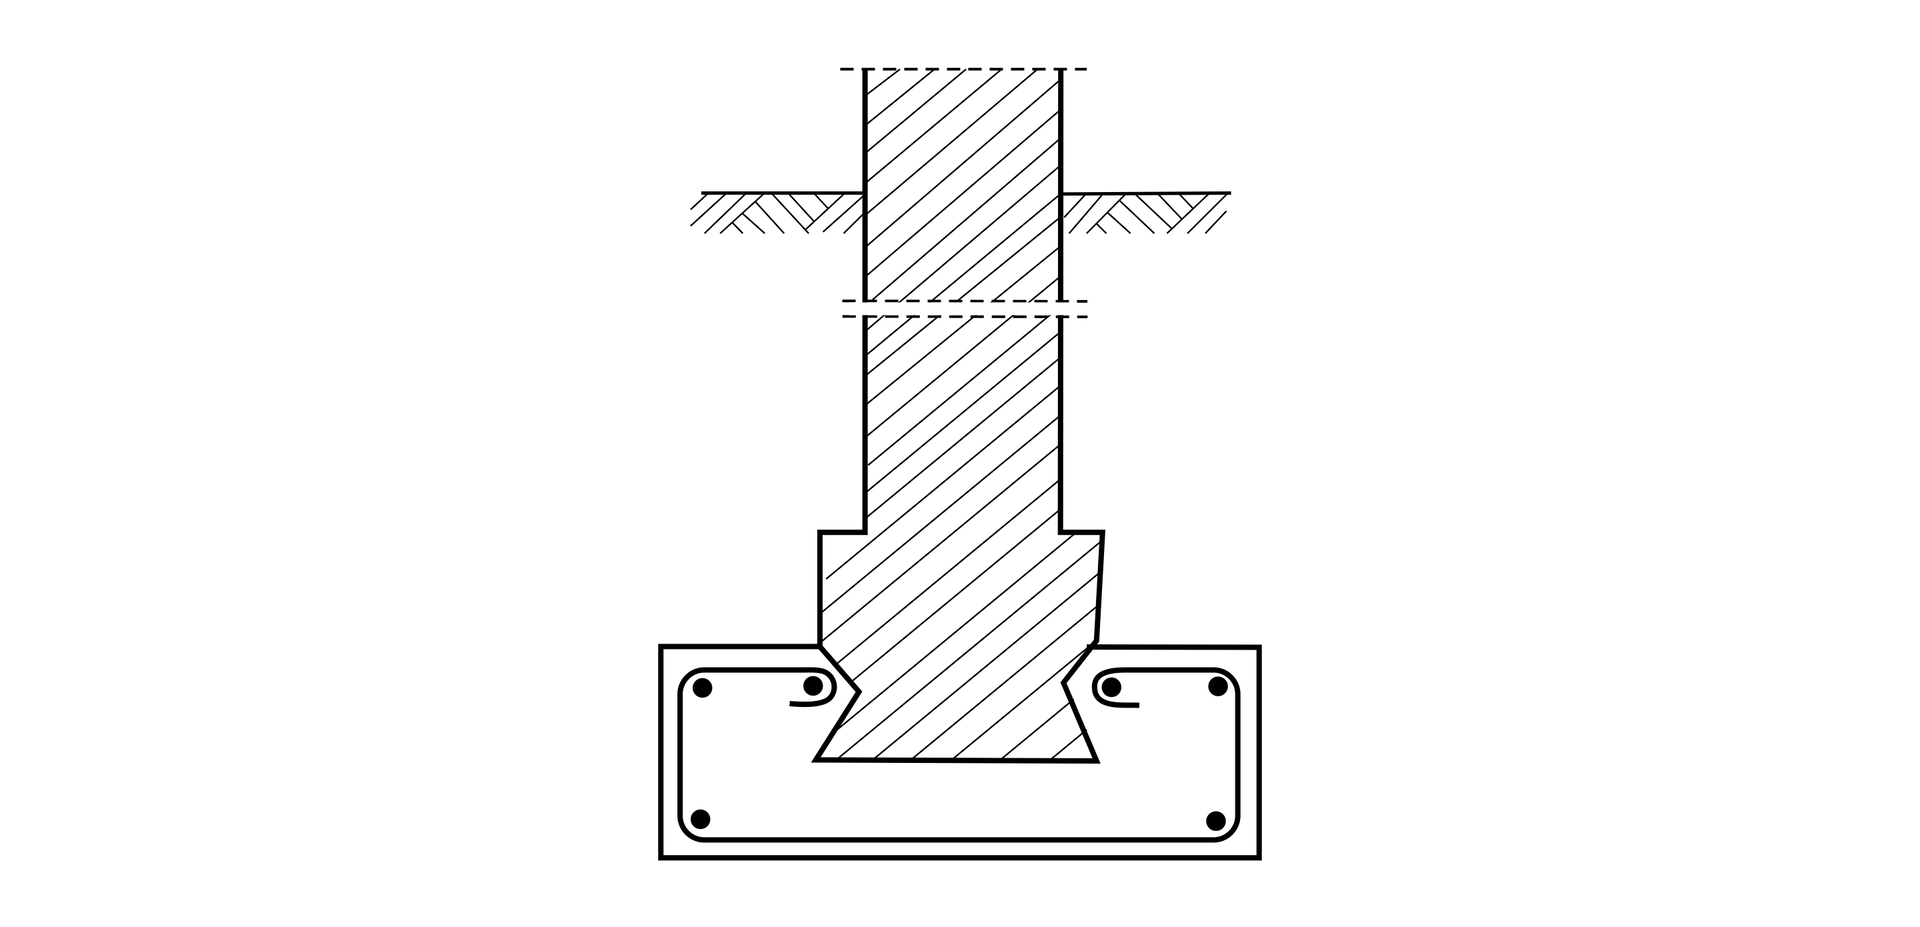 Ilustracja przedstawia poszerzenie ławy fundamentowej z cegły przez wykonanie ławy żelbetowej.